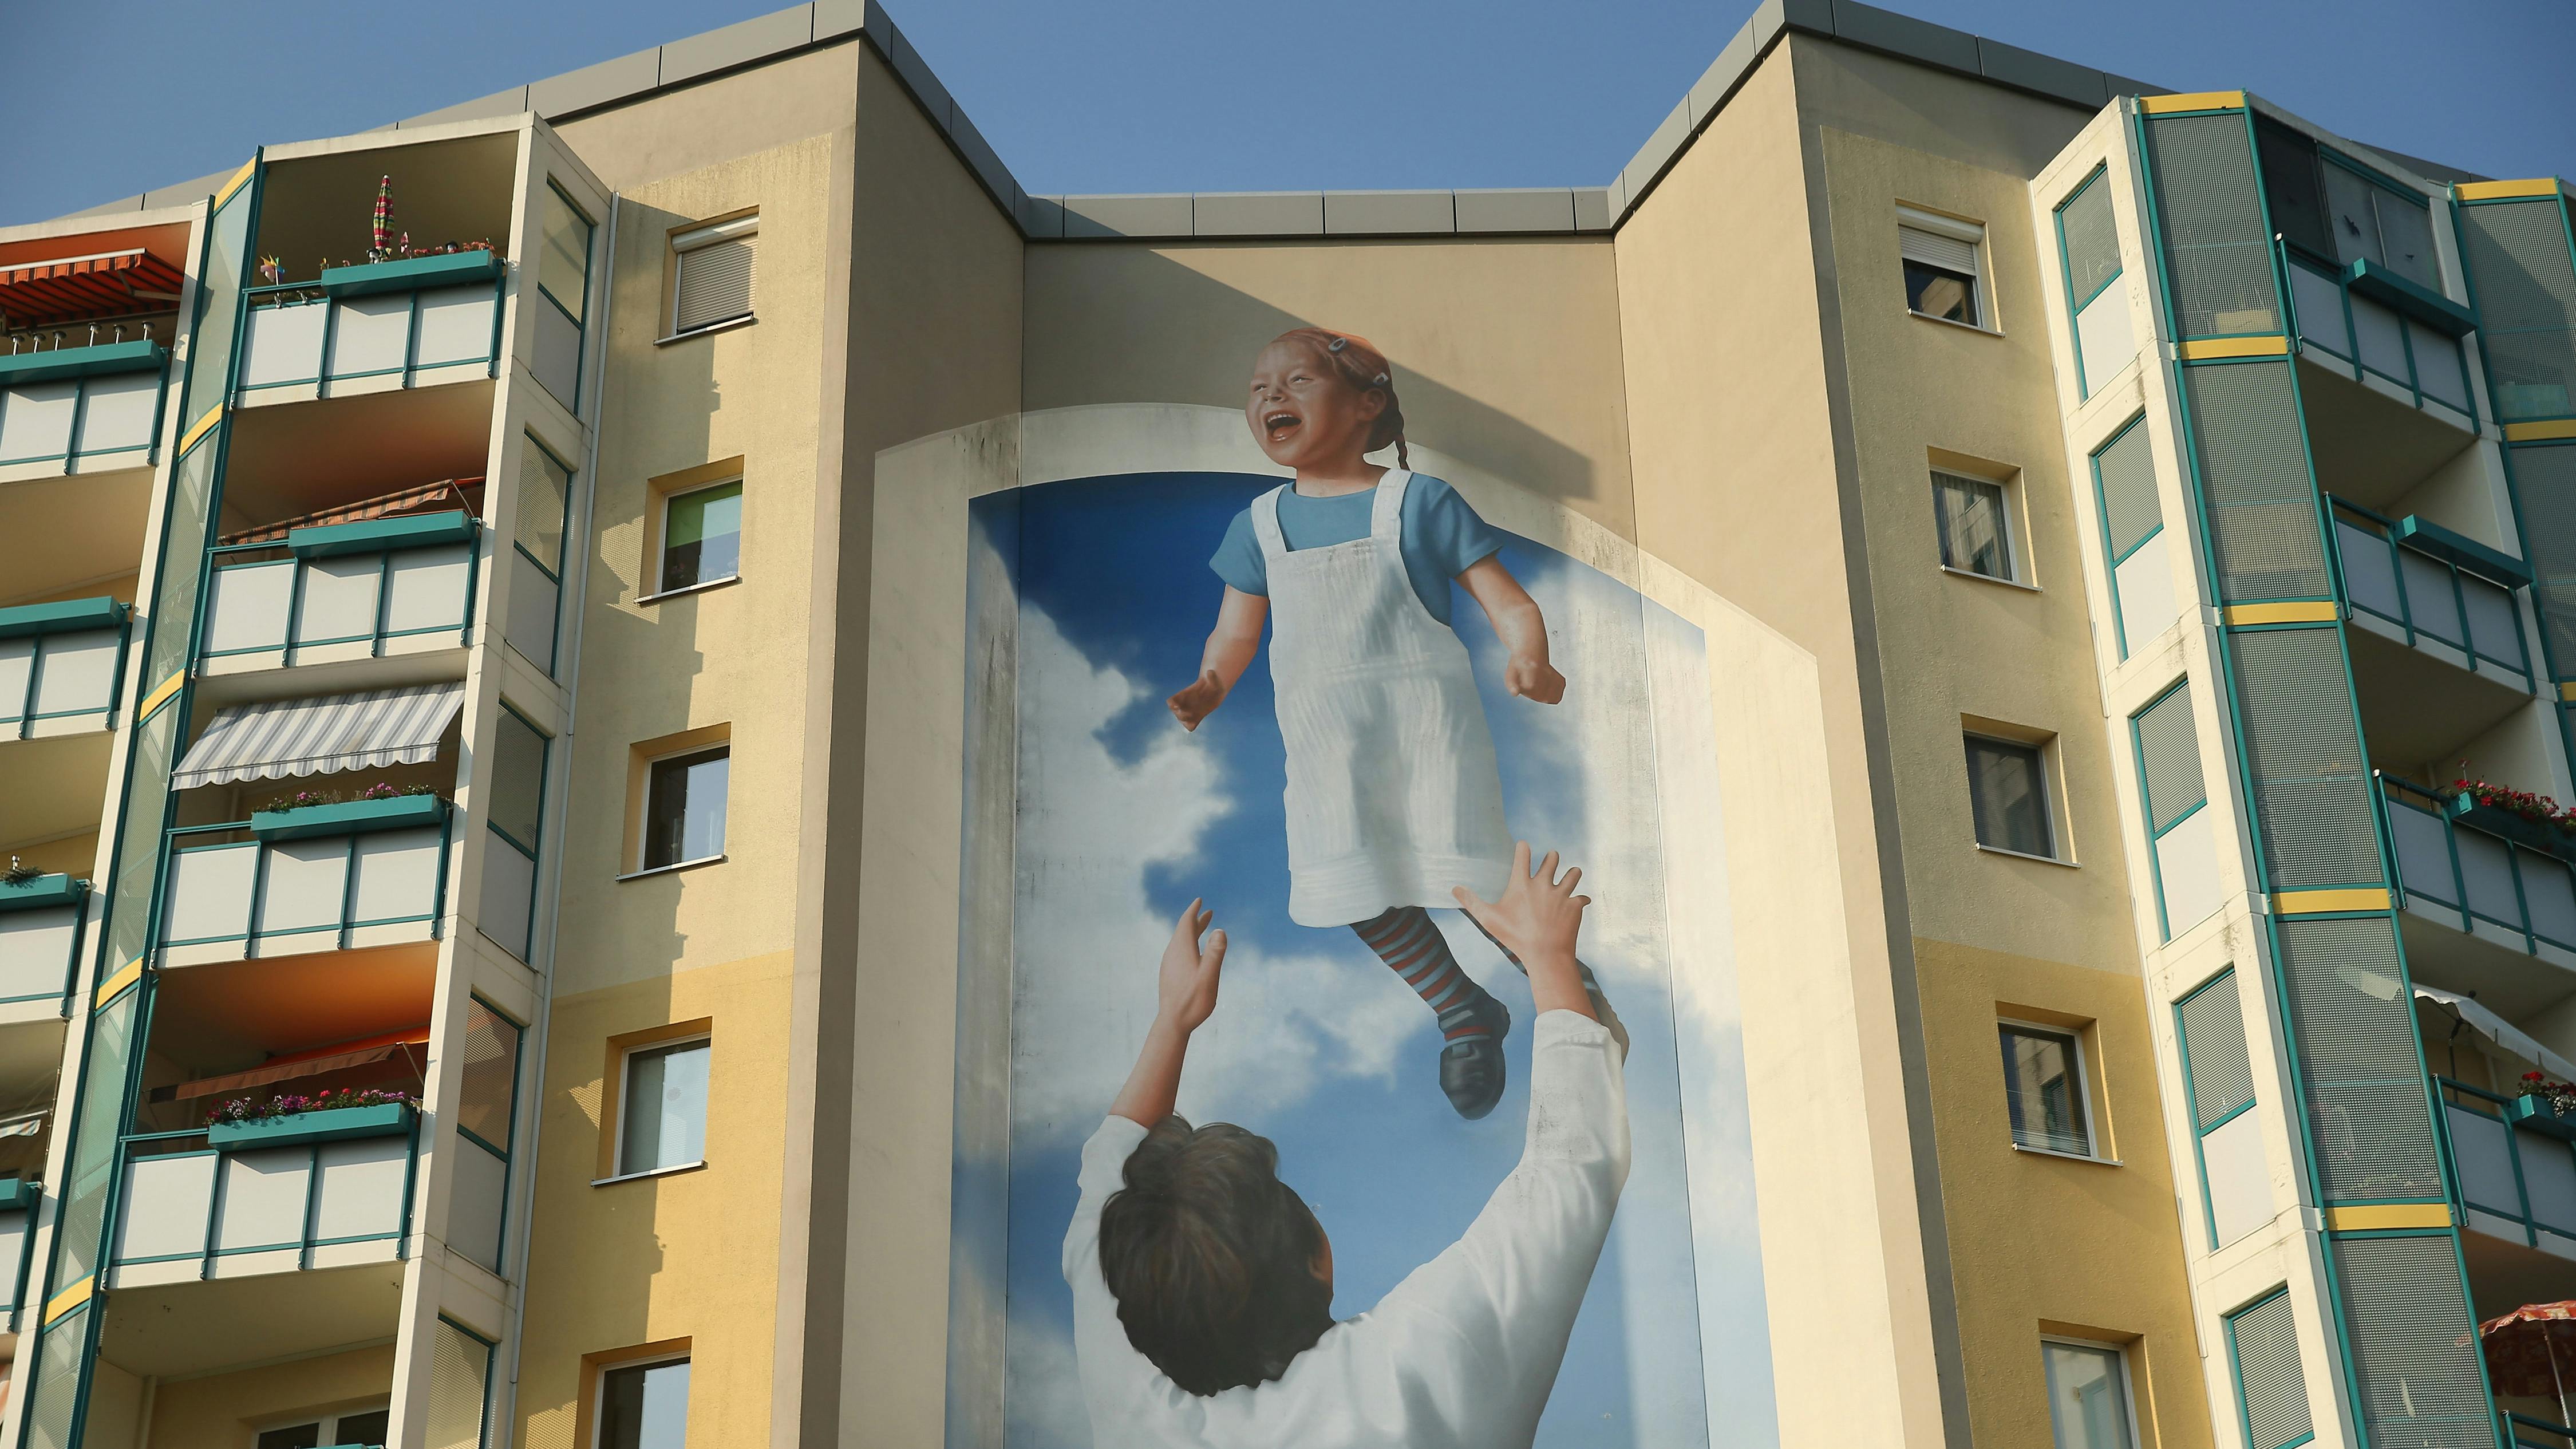 Ein Wandmalerei an der Seite eines kommunistischen Wohnblocks zeigt einen Vater, der seine Tochter in die Luft wirft.